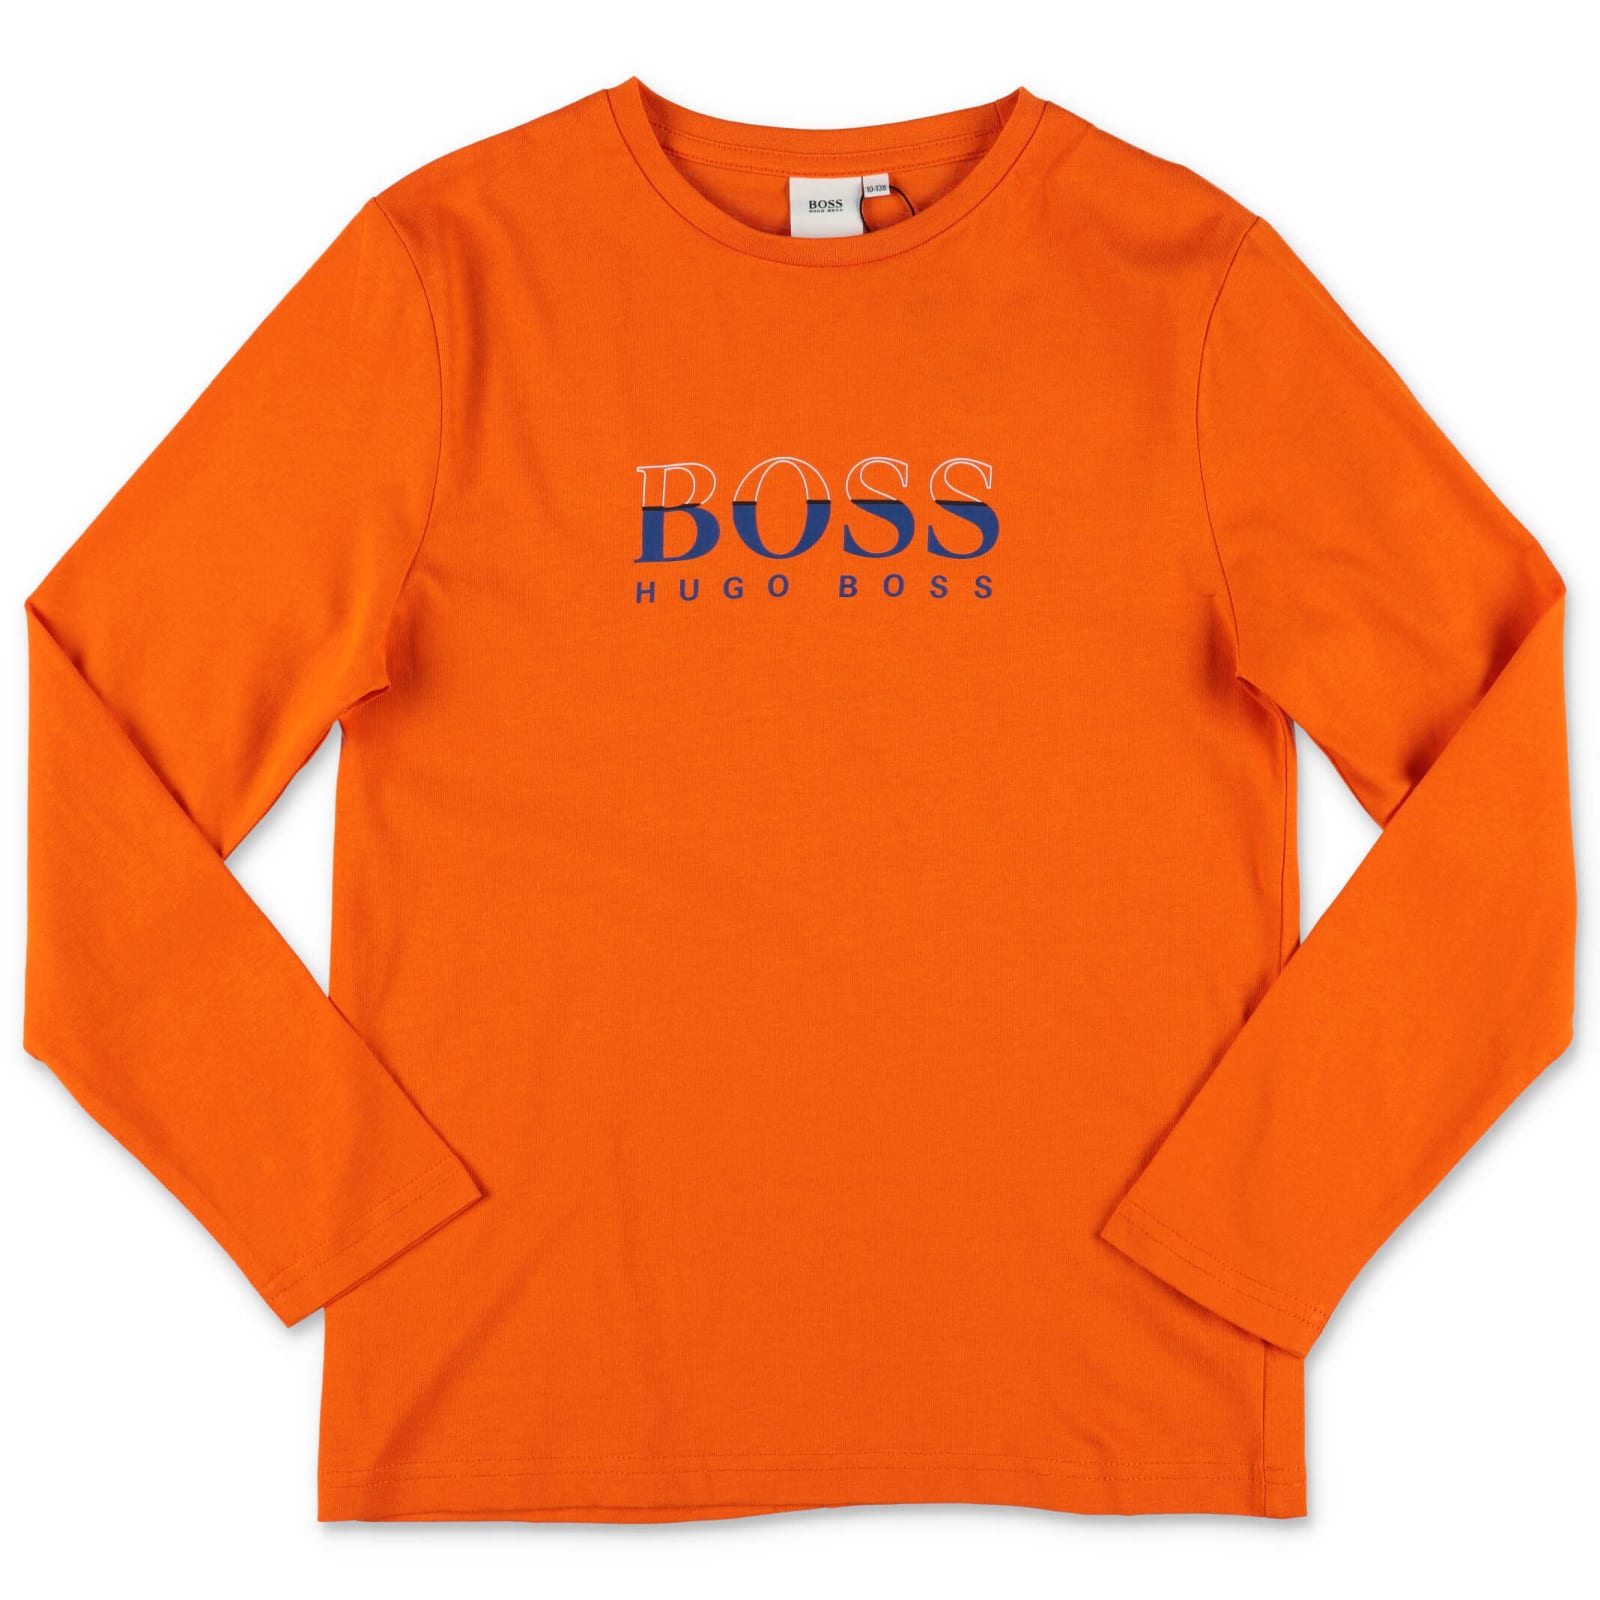 Hugo Boss T-shirt Arancio In Jersey Di Cotone